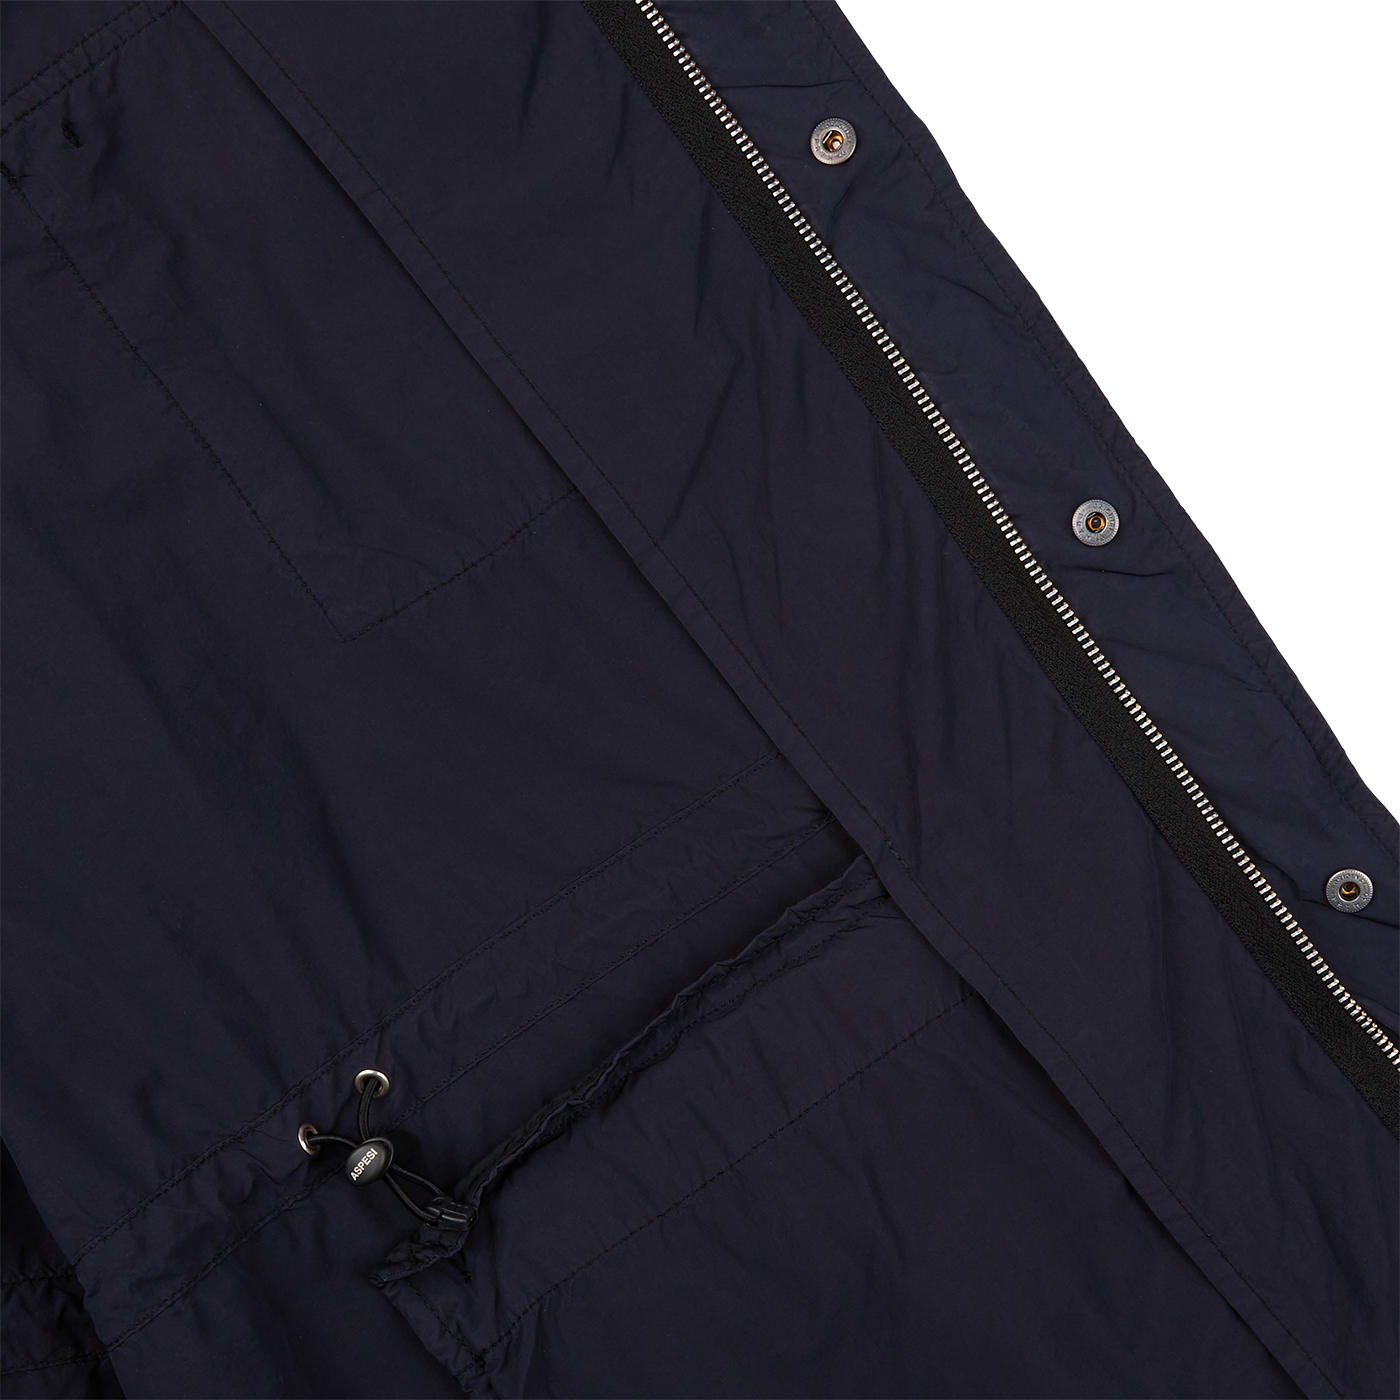 A Aspesi navy blue nylon taffeta M65 Field Jacket with zippered pockets made of nylon taffeta material.